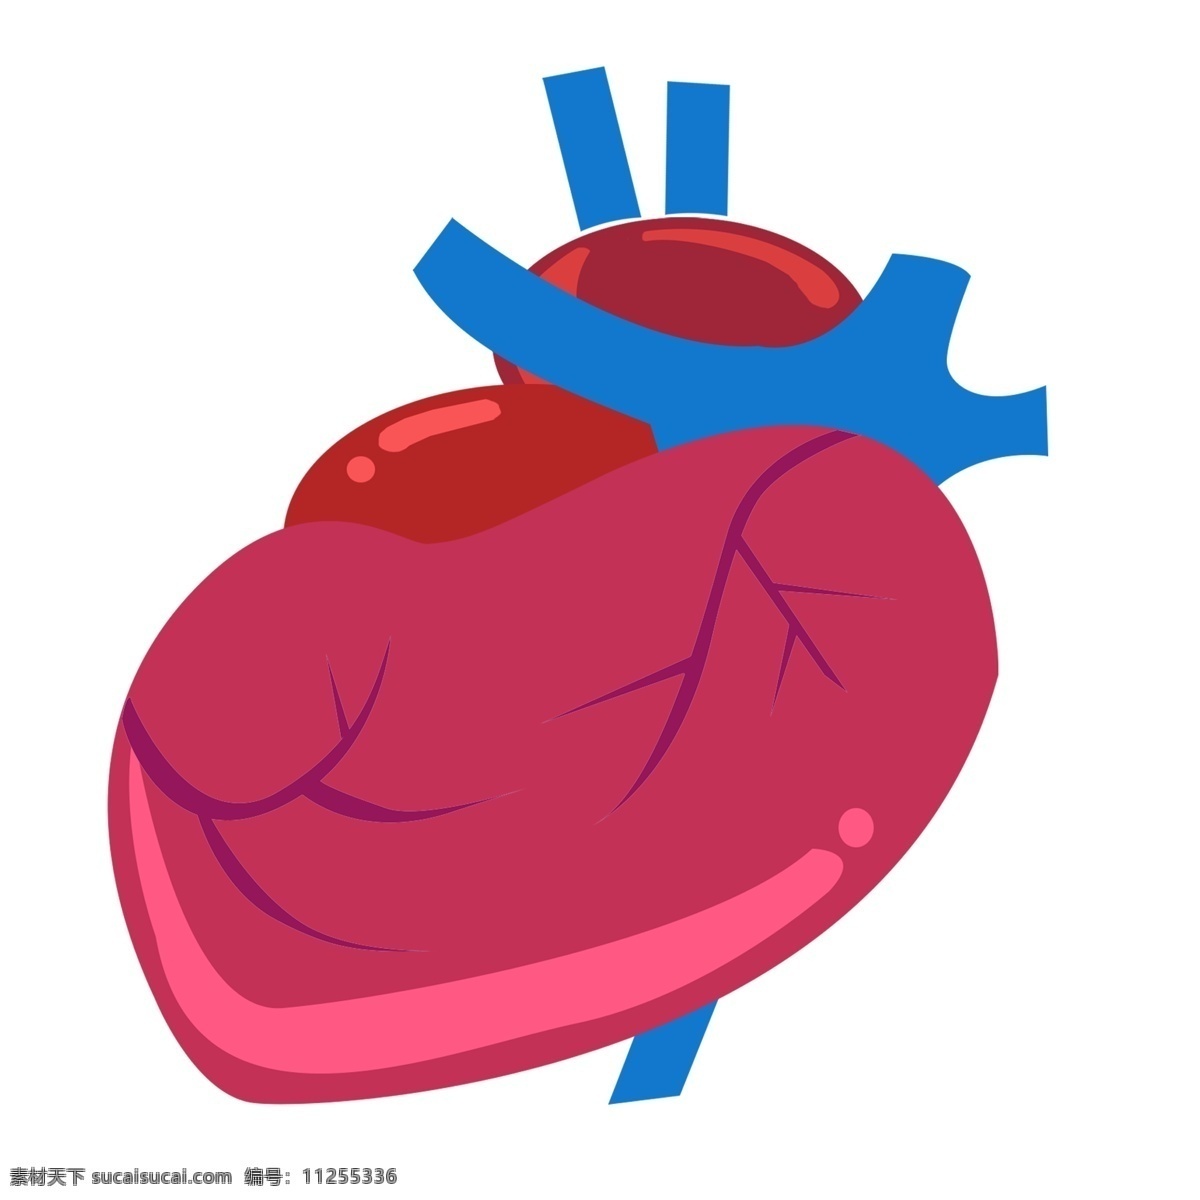 红色 跳动 心脏 插画 红色的心脏 跳动的心脏 波动的心脏 输血的心脏 供血的心脏 卡通插画 脏器插画